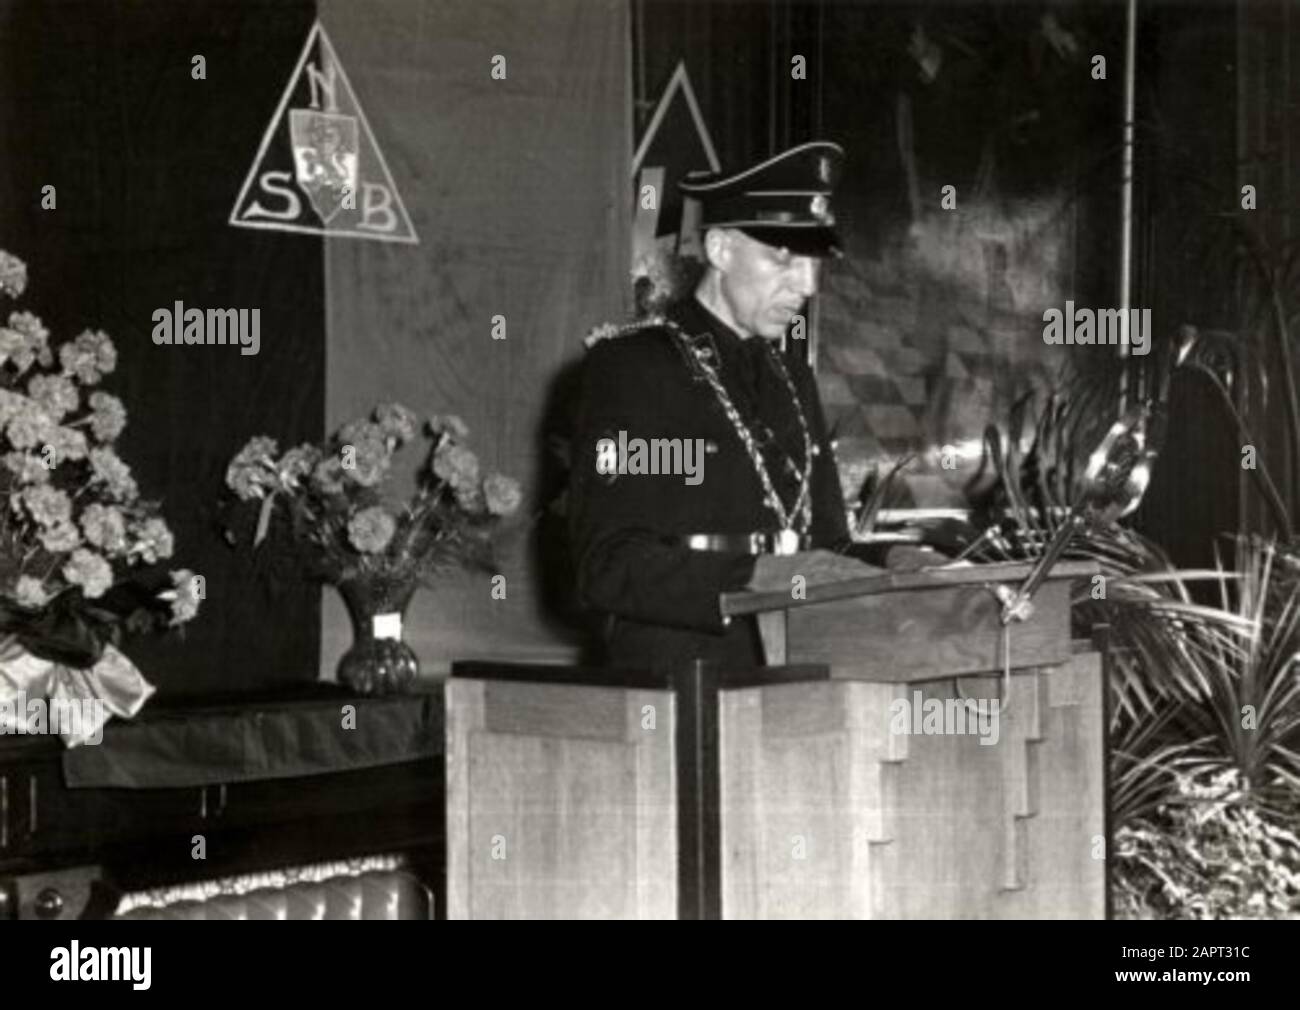 Der NSber Bürgermeister Jonkheer E.F. Sandberg steht hinter einer Katheder in SS-Uniform und liest seine Rede während seiner Installation als Bürgermeister von Kampen. Auf der Hülse das SS-Schild. Er trägt auch seine Amtskette. Hinter ihm steht das Emblem des NSB. Niederlande, 30. Mai 1941. Stockfoto